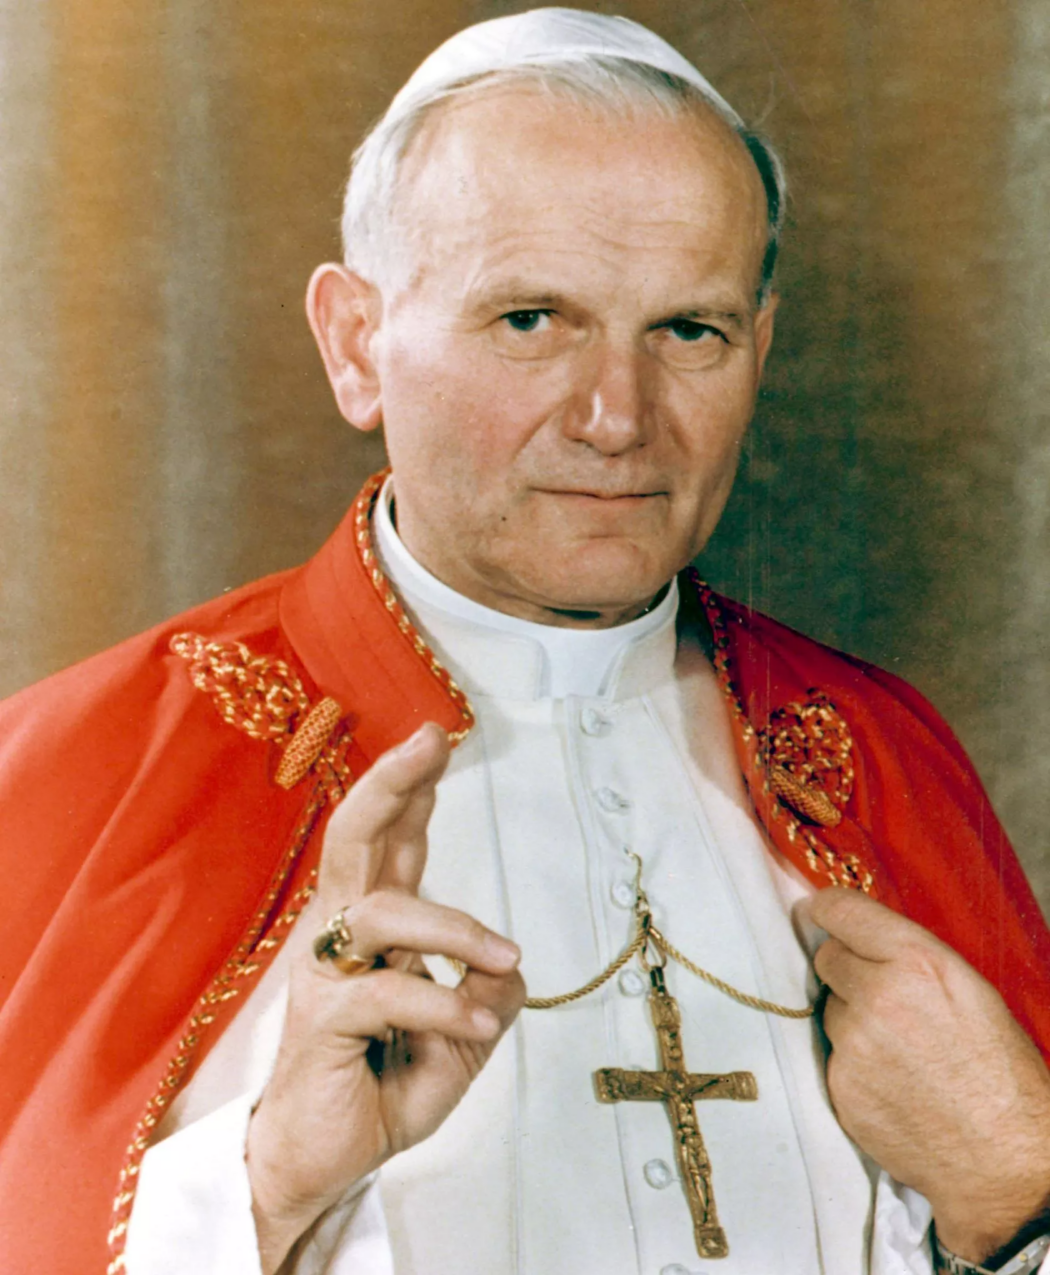 Création du Prix S. Jean-Paul II pour la famille, l’amour et la vie